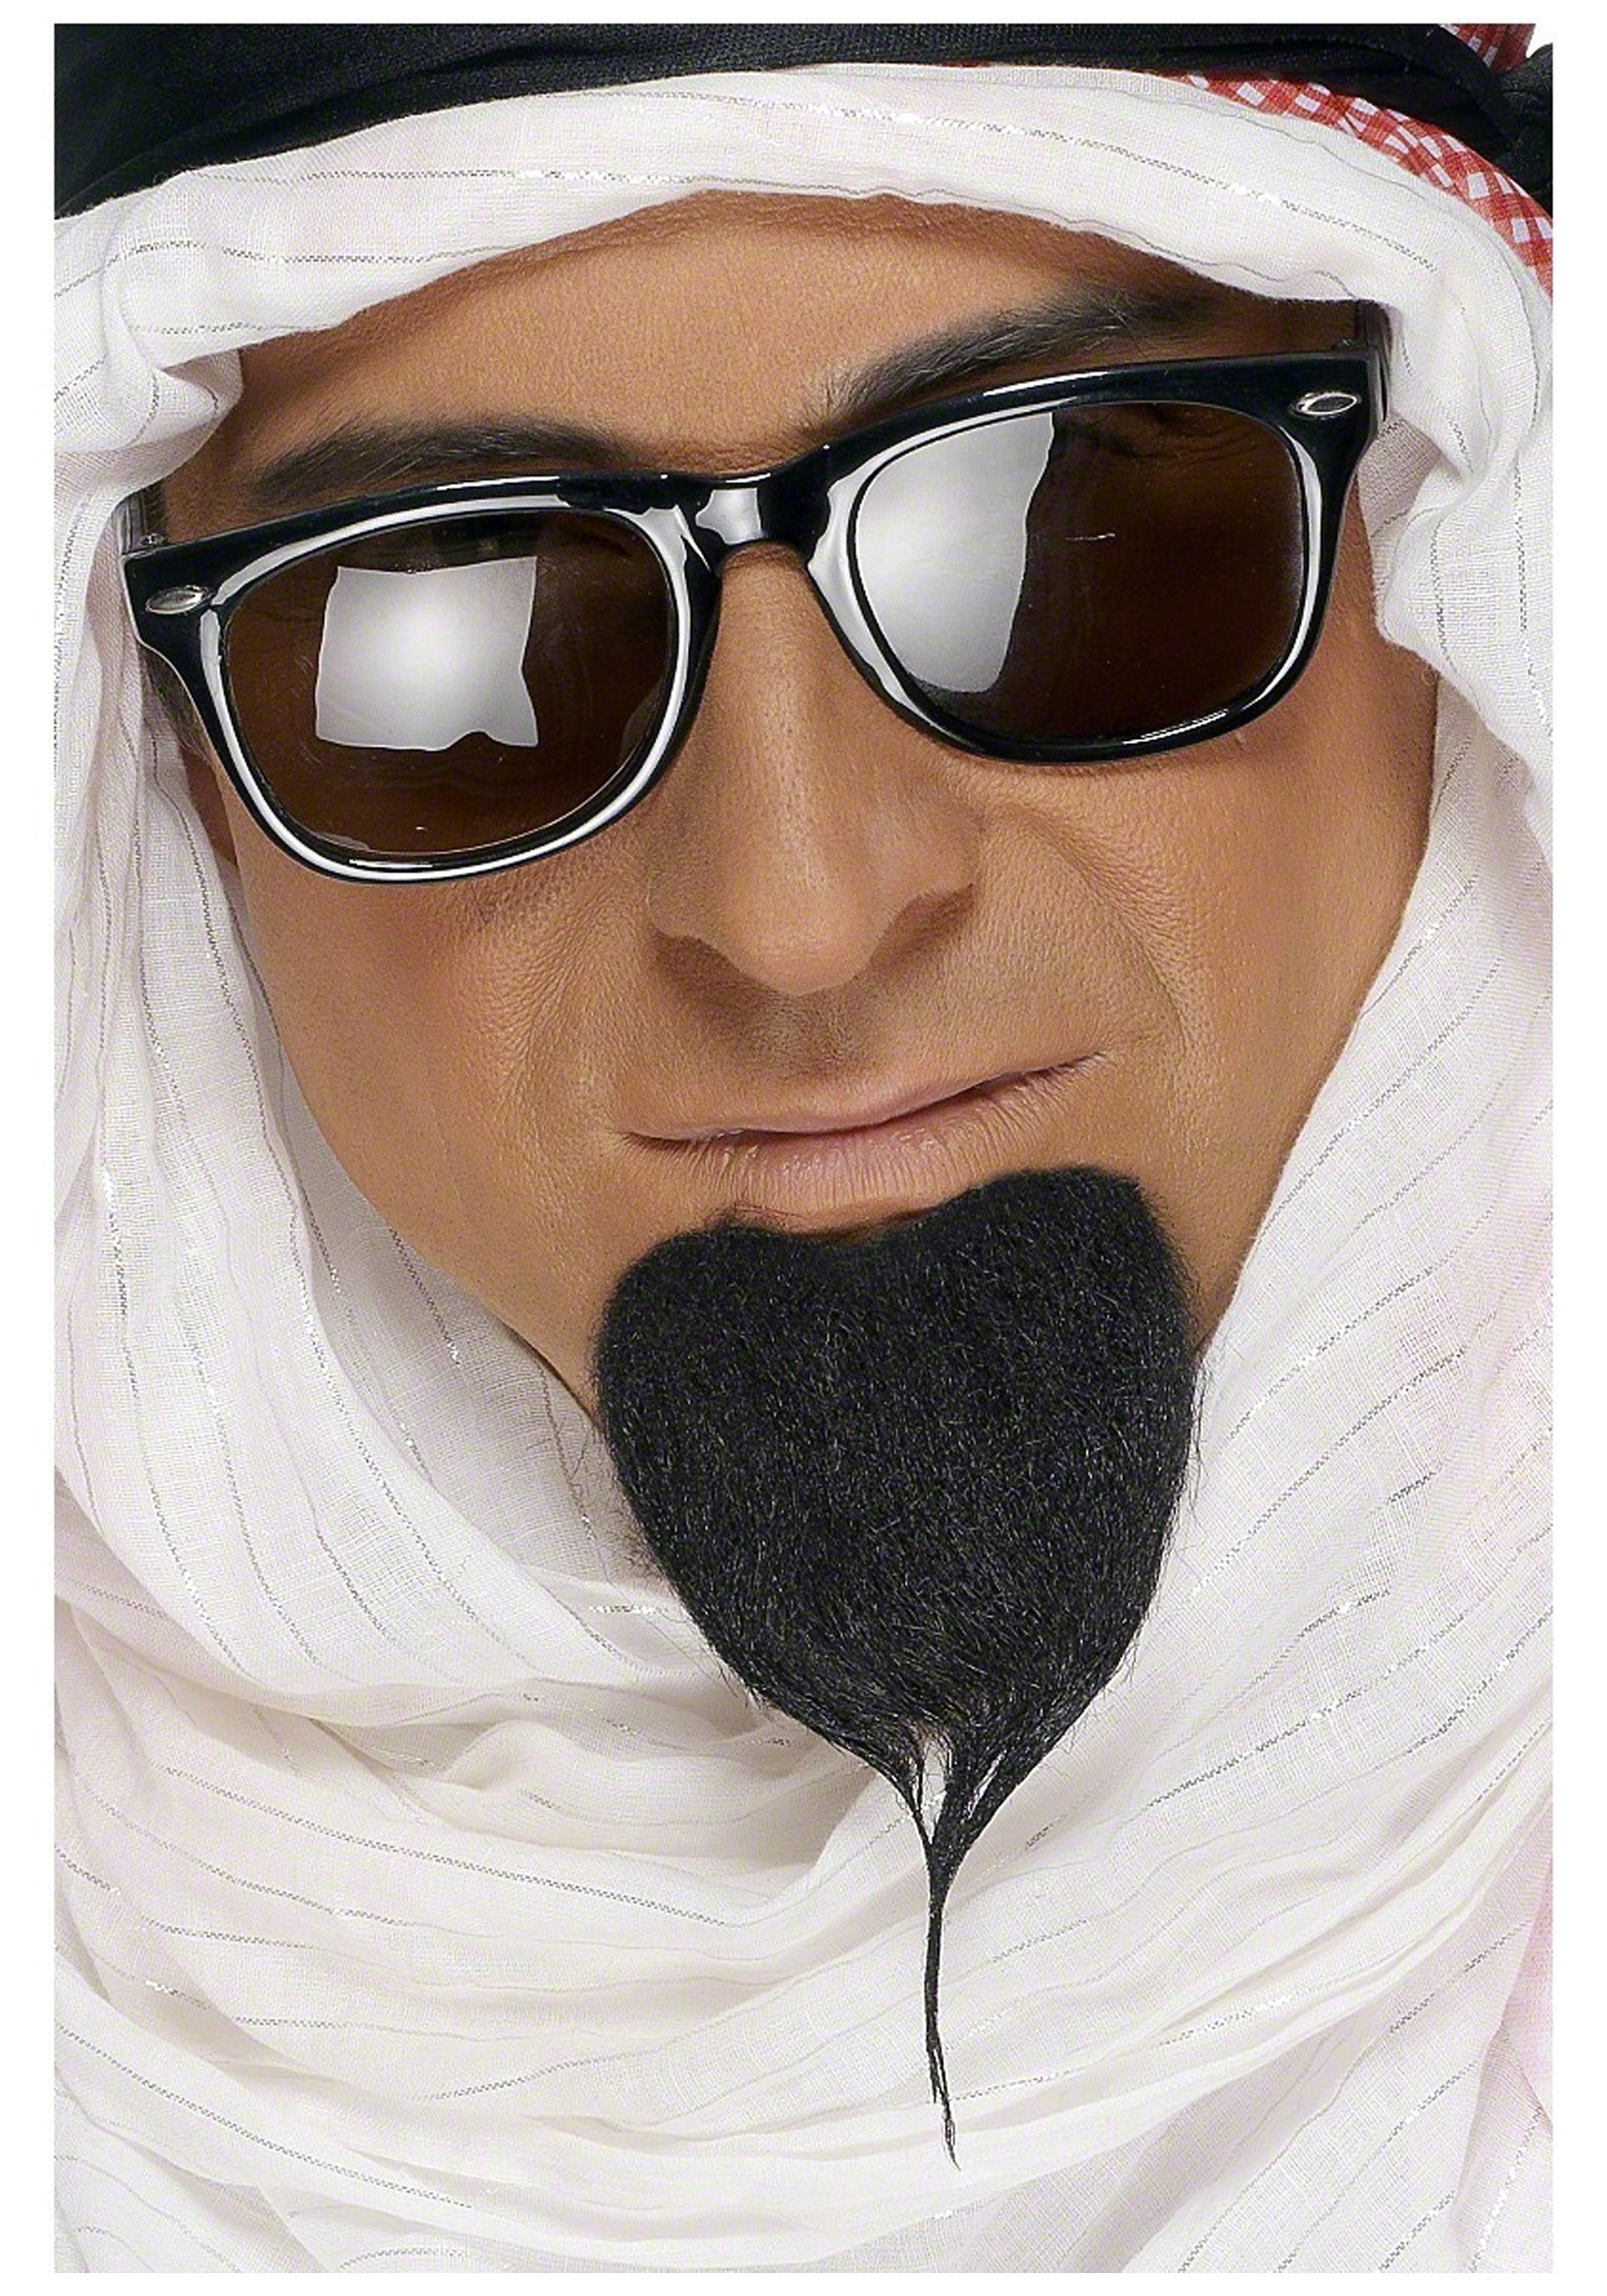 Ава араба. Араб в очках. Араб с бородой. Крутой араб. Шейх в очках.